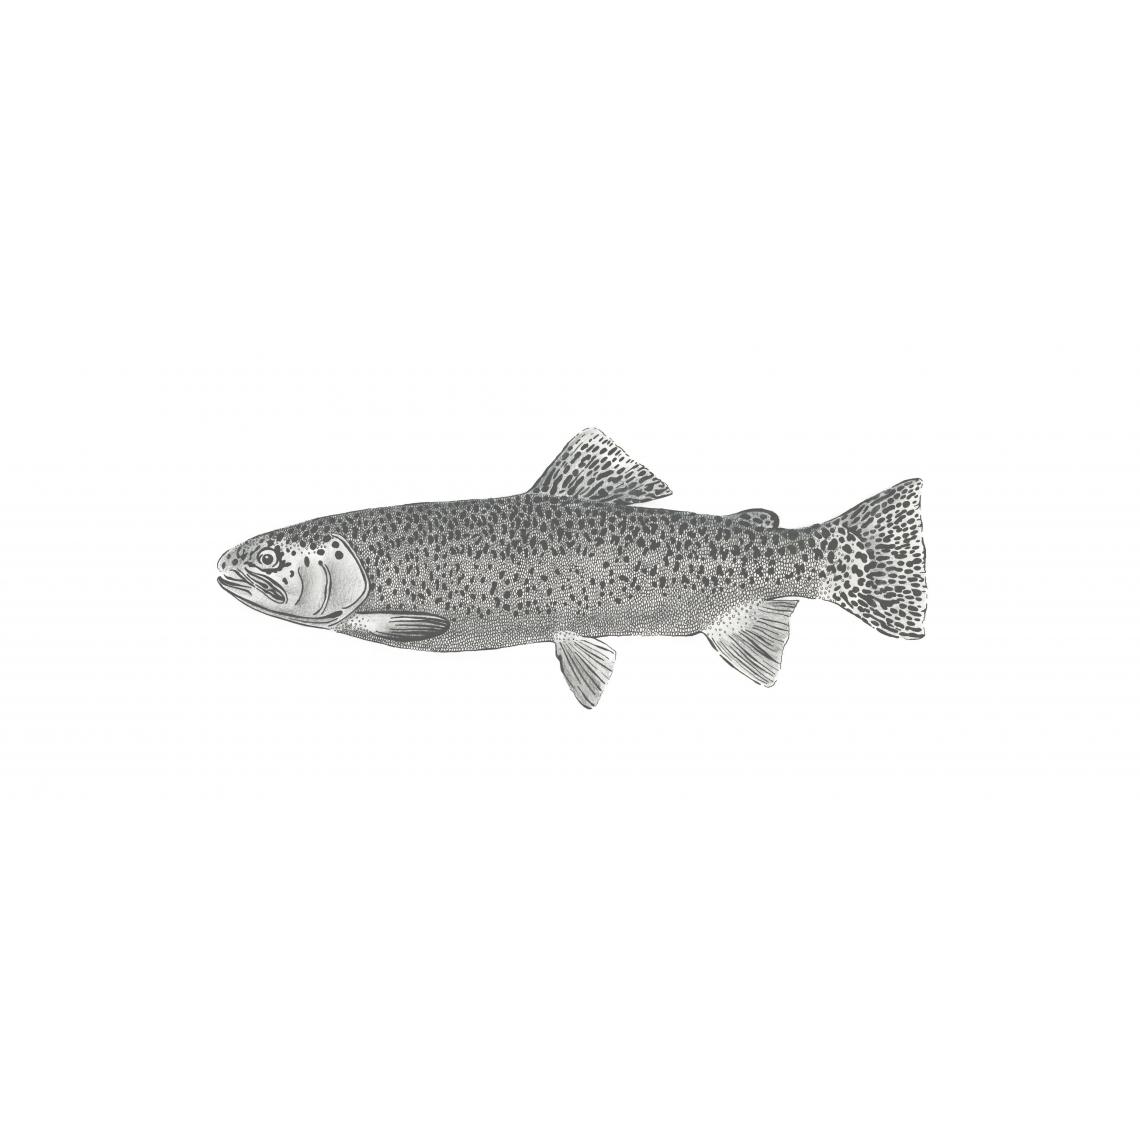 ESTAhome - ESTAhome papier peint panoramique poisson blanc et noir - 158933 - 1 x 2.5 m - Papier peint